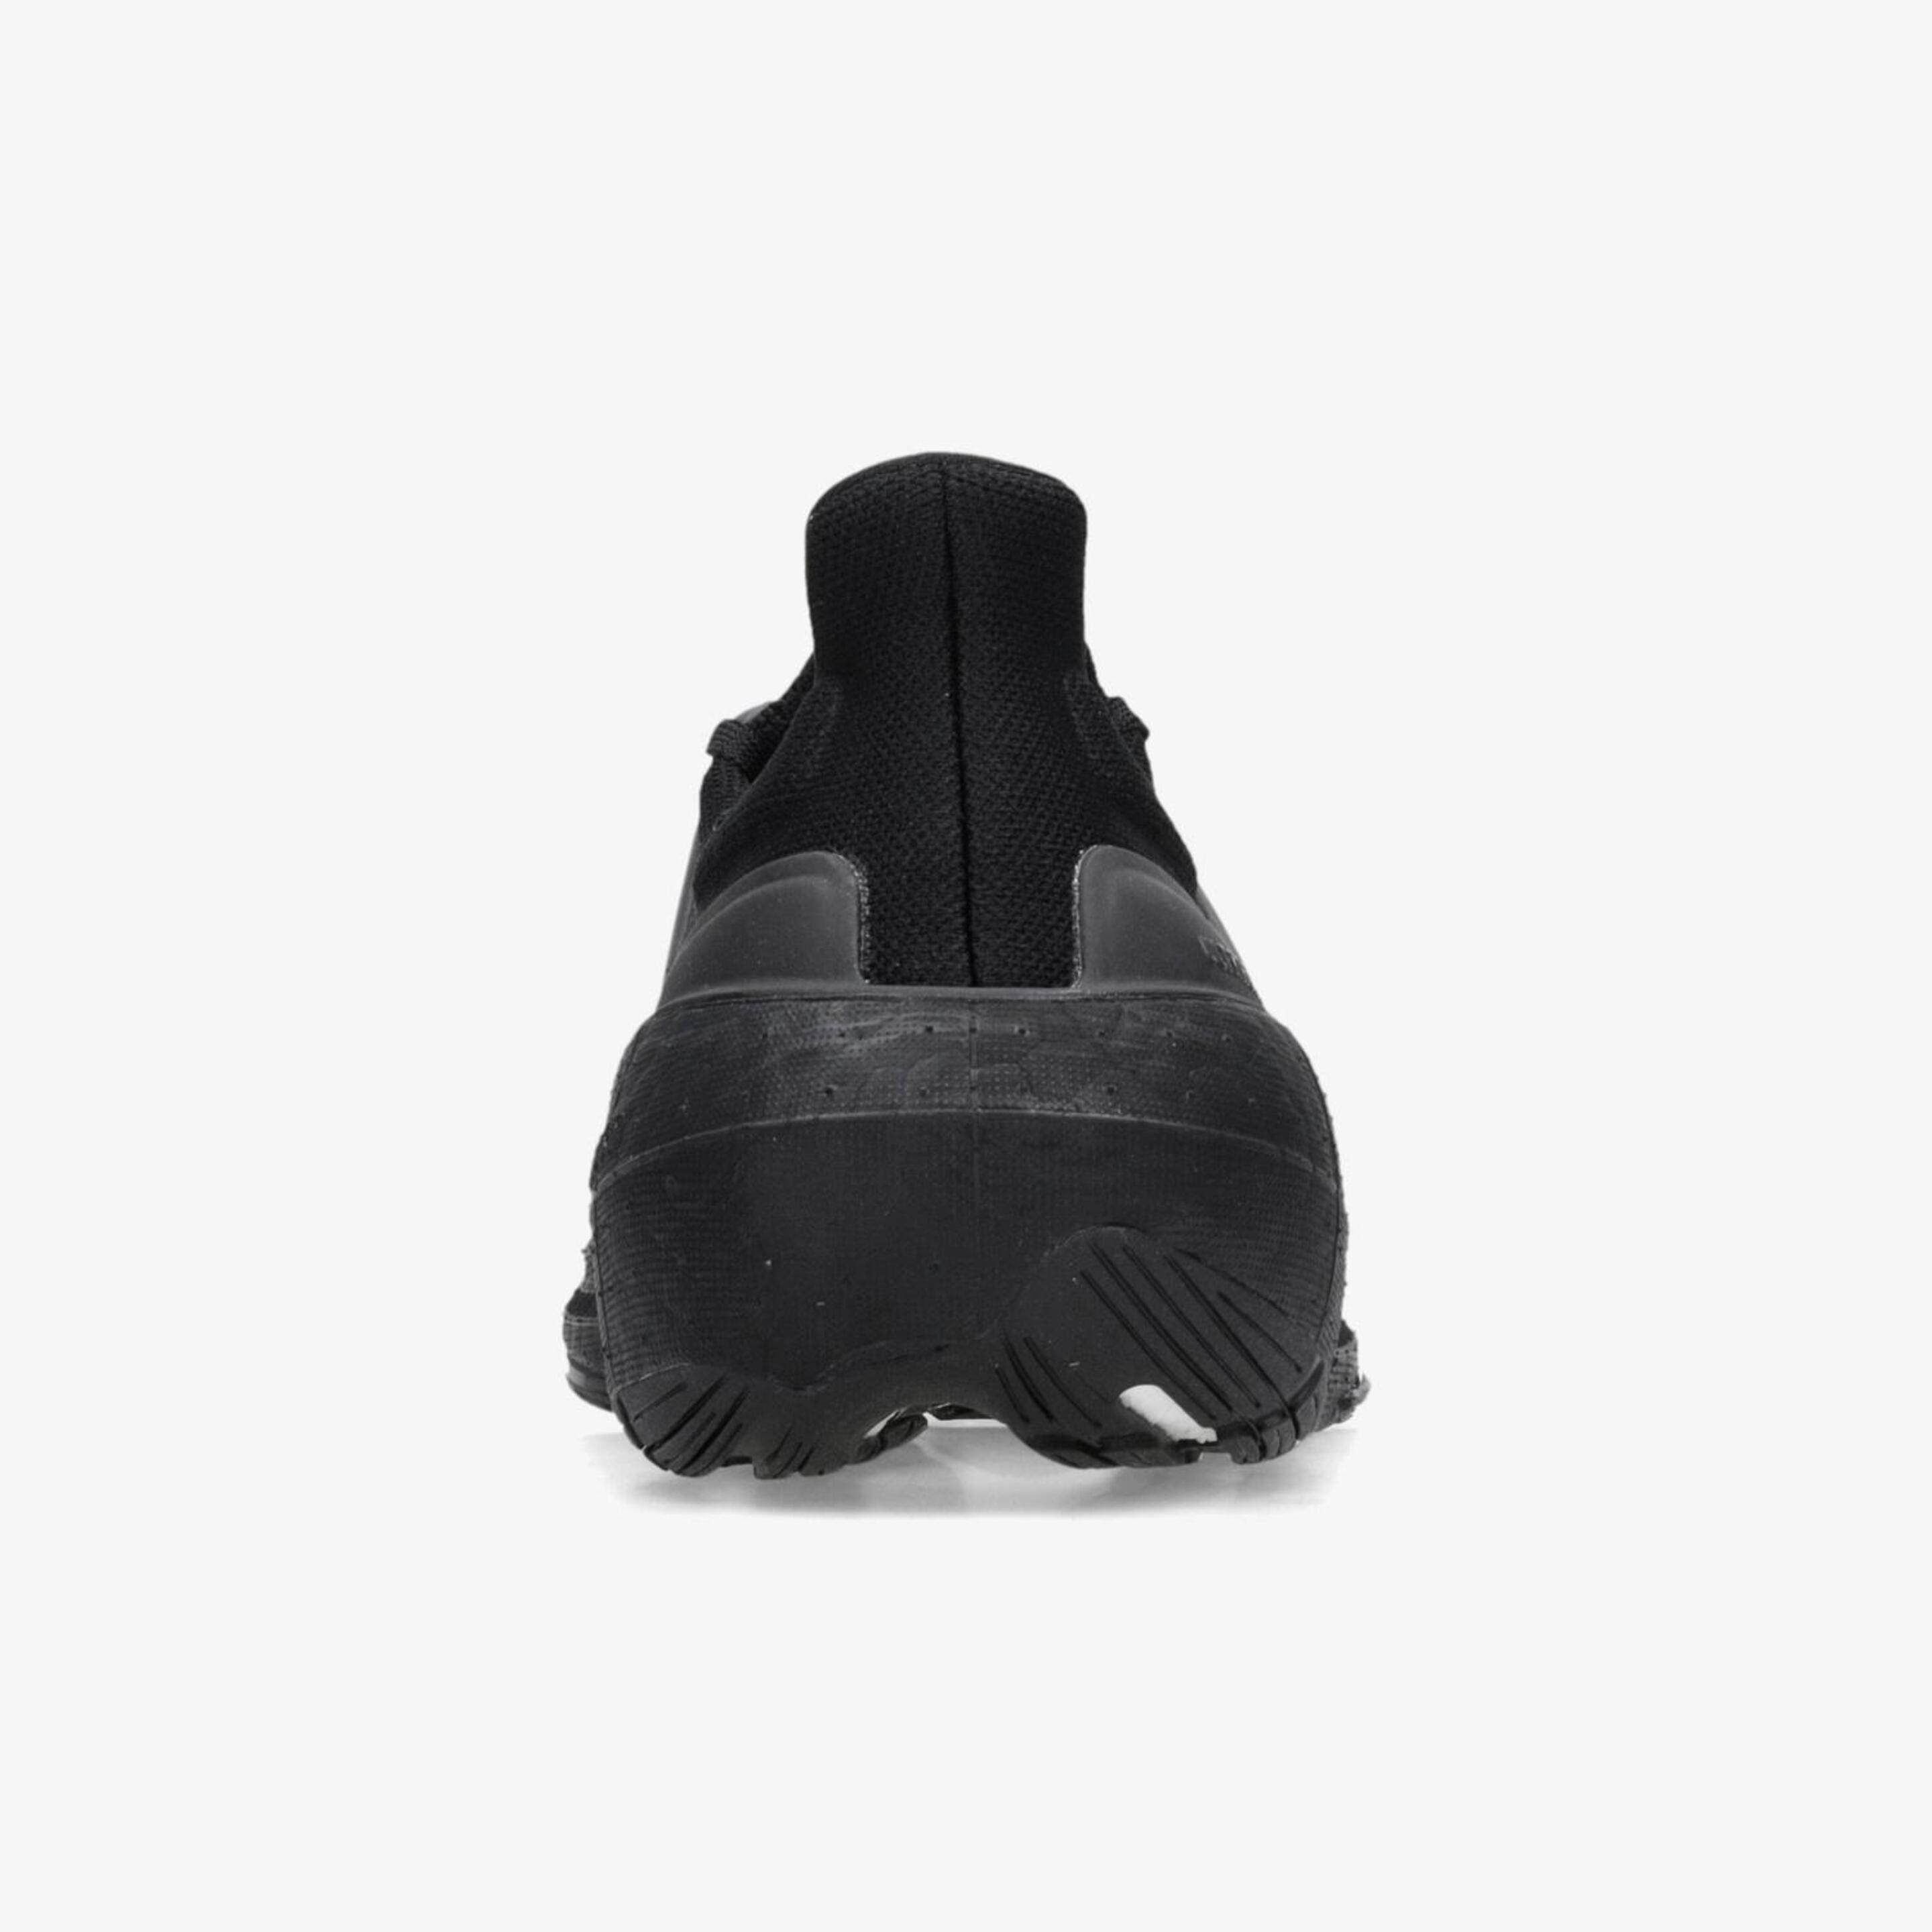 adidas Ultraboost Light - Negro - Zapatillas Running Mujer